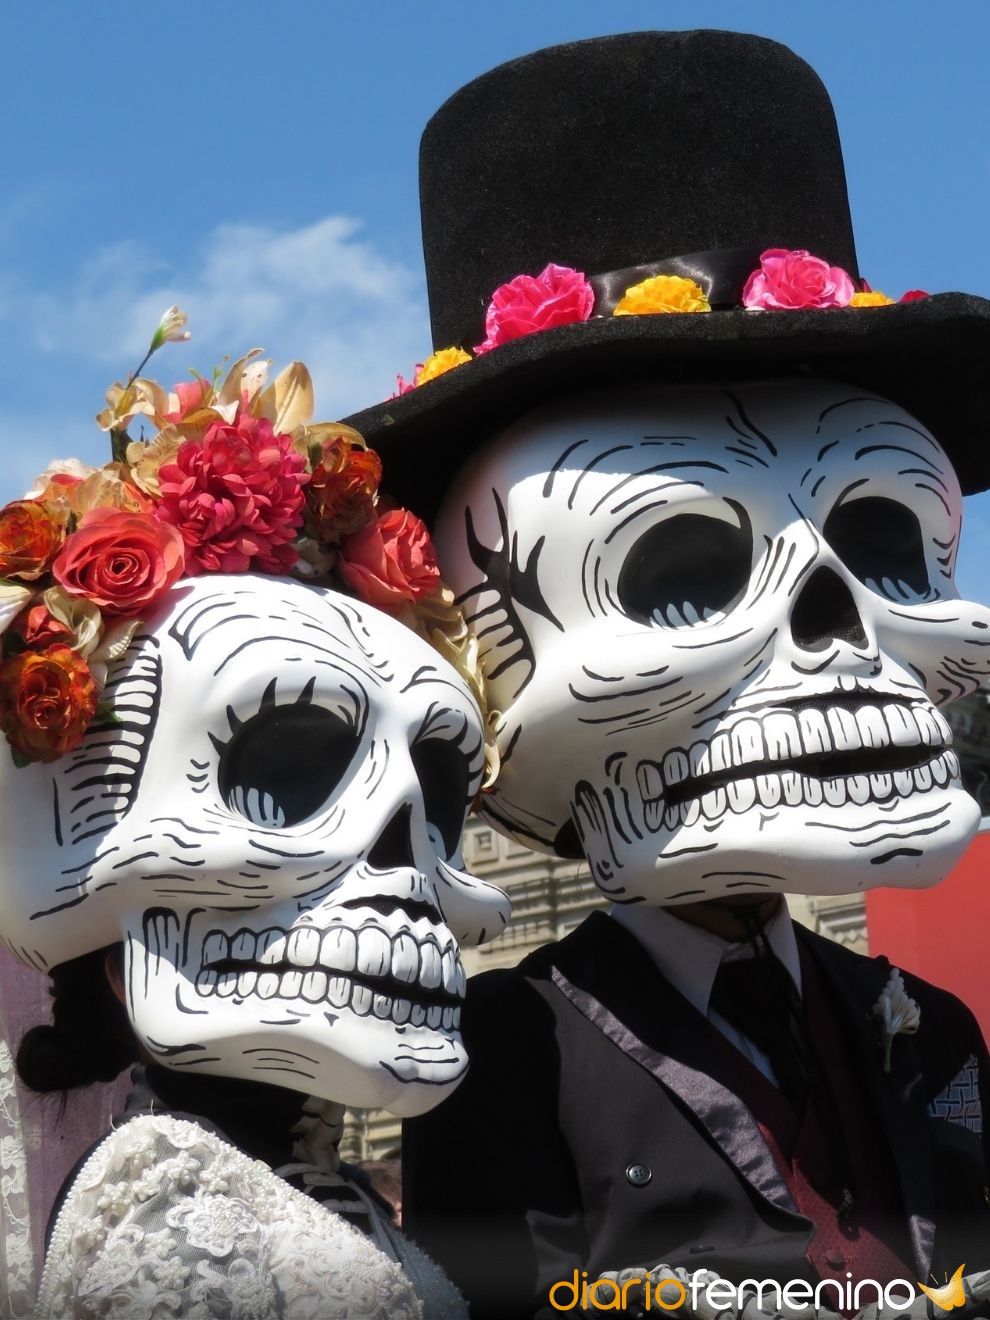 Escalera Salida templo 7 calaveritas literarias para el Día de Muertos: ¿cómo escribirlas?